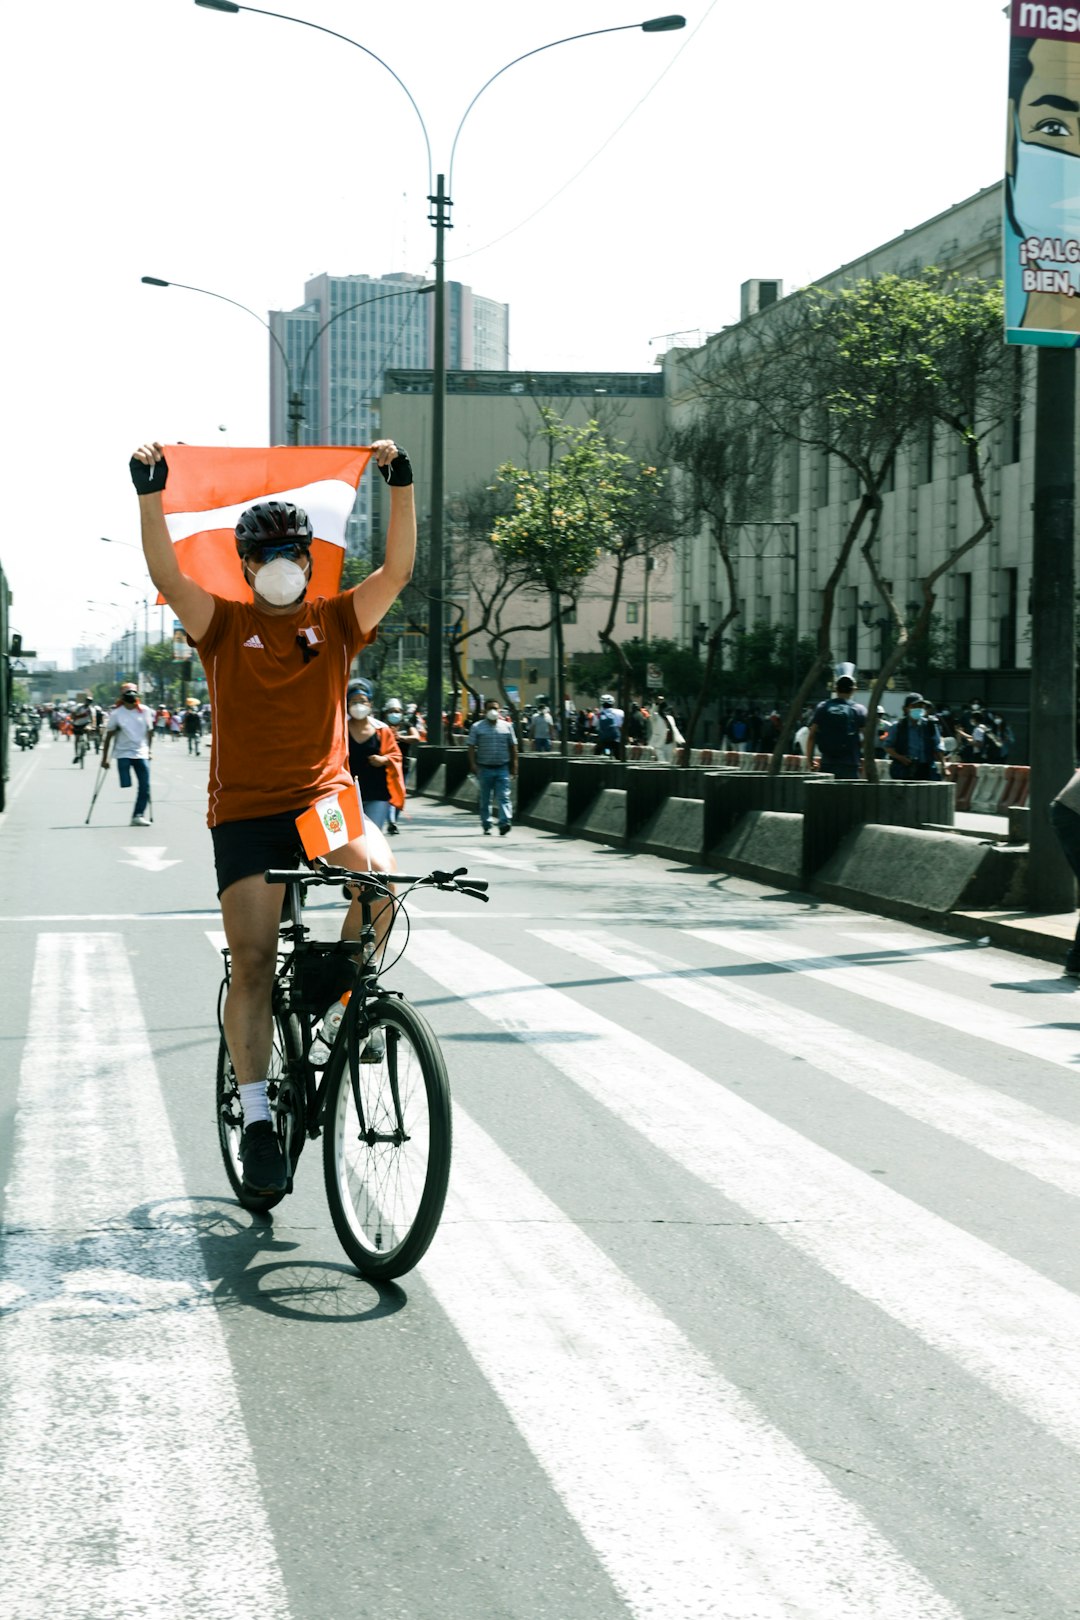 man in orange t-shirt riding bicycle on road during daytime